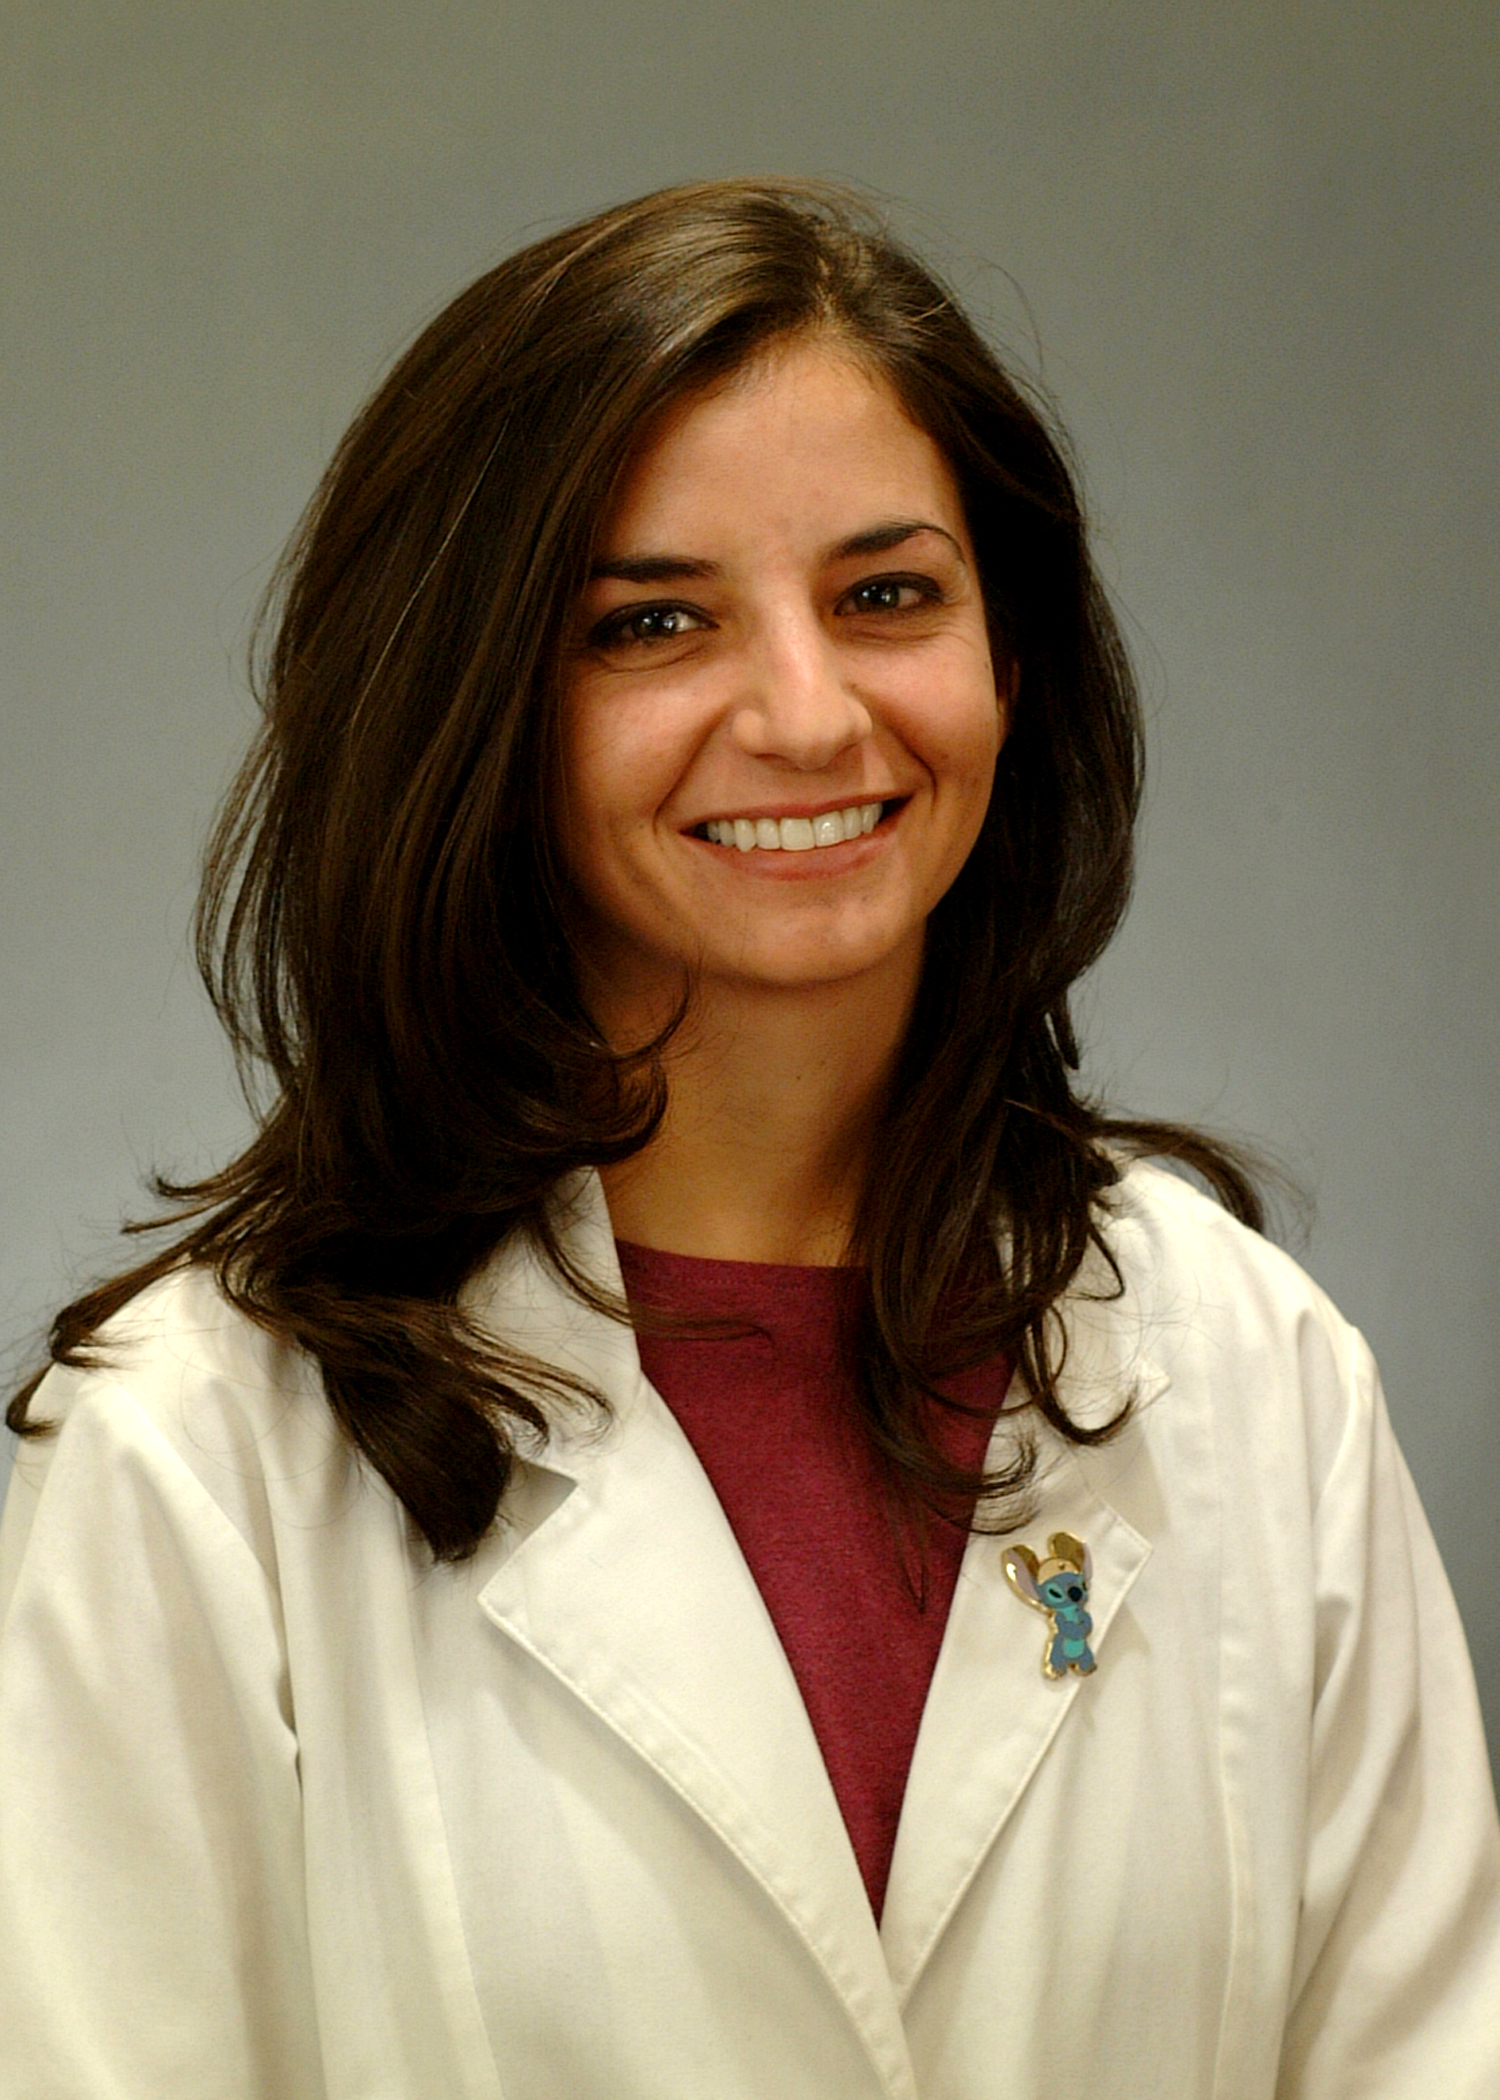 Dr. Theresa Pancotto